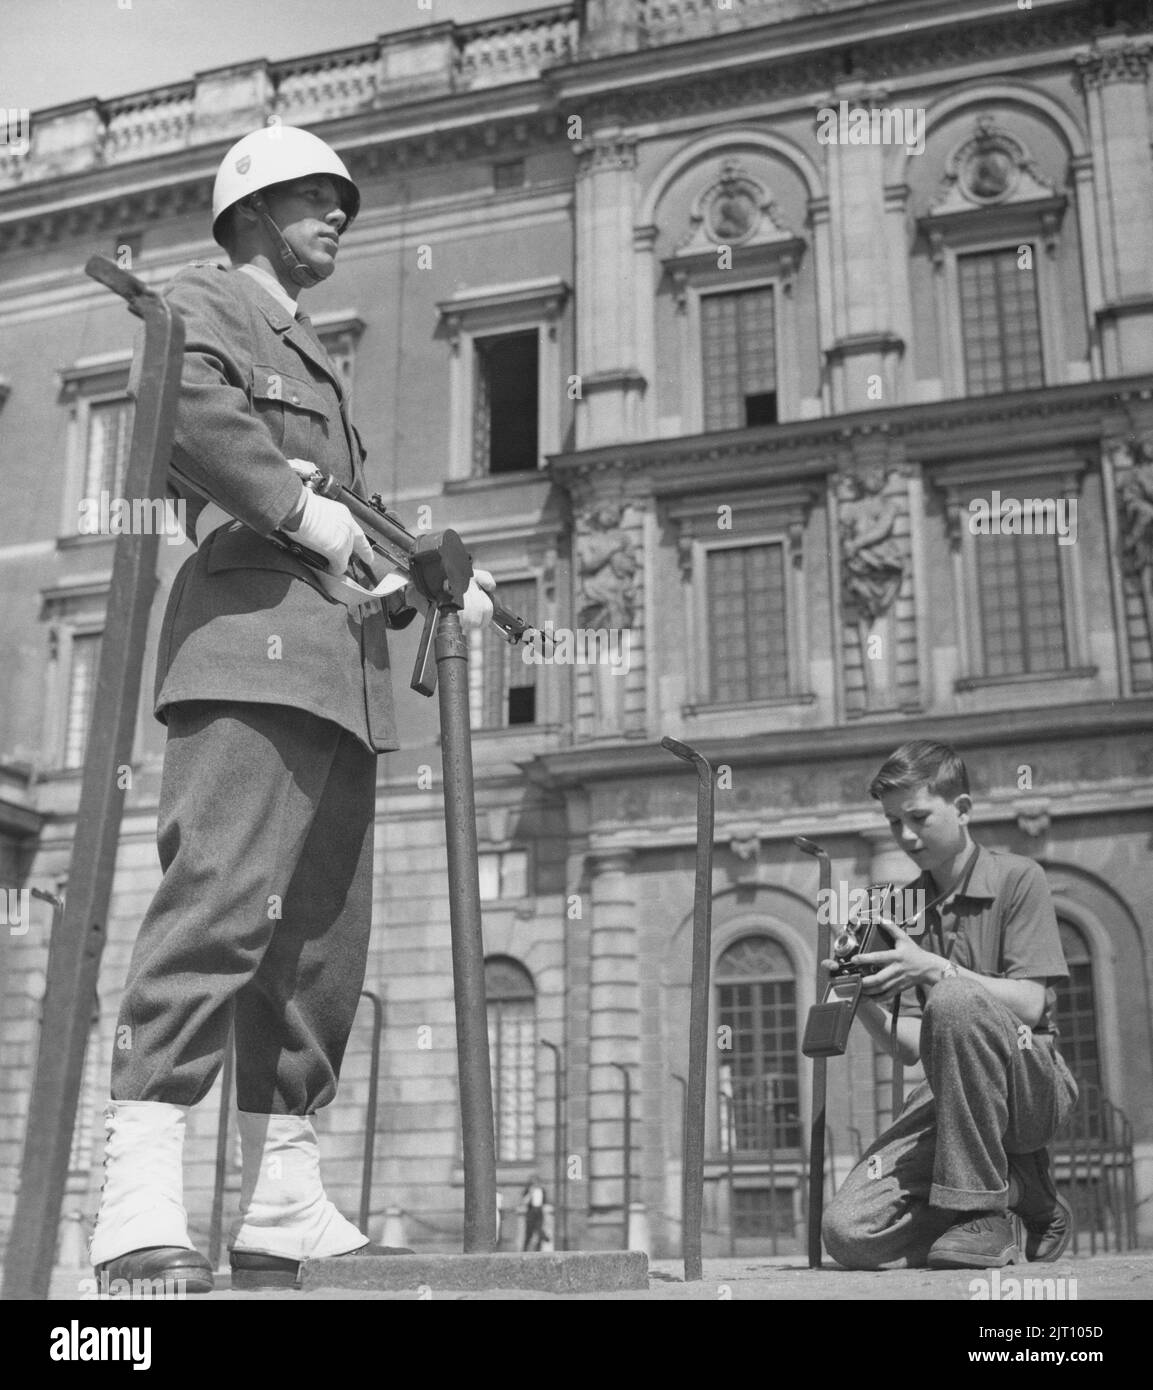 Fotograf im Jahr 1950s. Ein kleiner Junge mit seiner Kamera im Hof des königlichen Schlosses in Stockholm macht ein Bild des Burgwächters, der in Uniform und Waffe steht. Schweden 1951 Conard Ref. 2443 Stockfoto